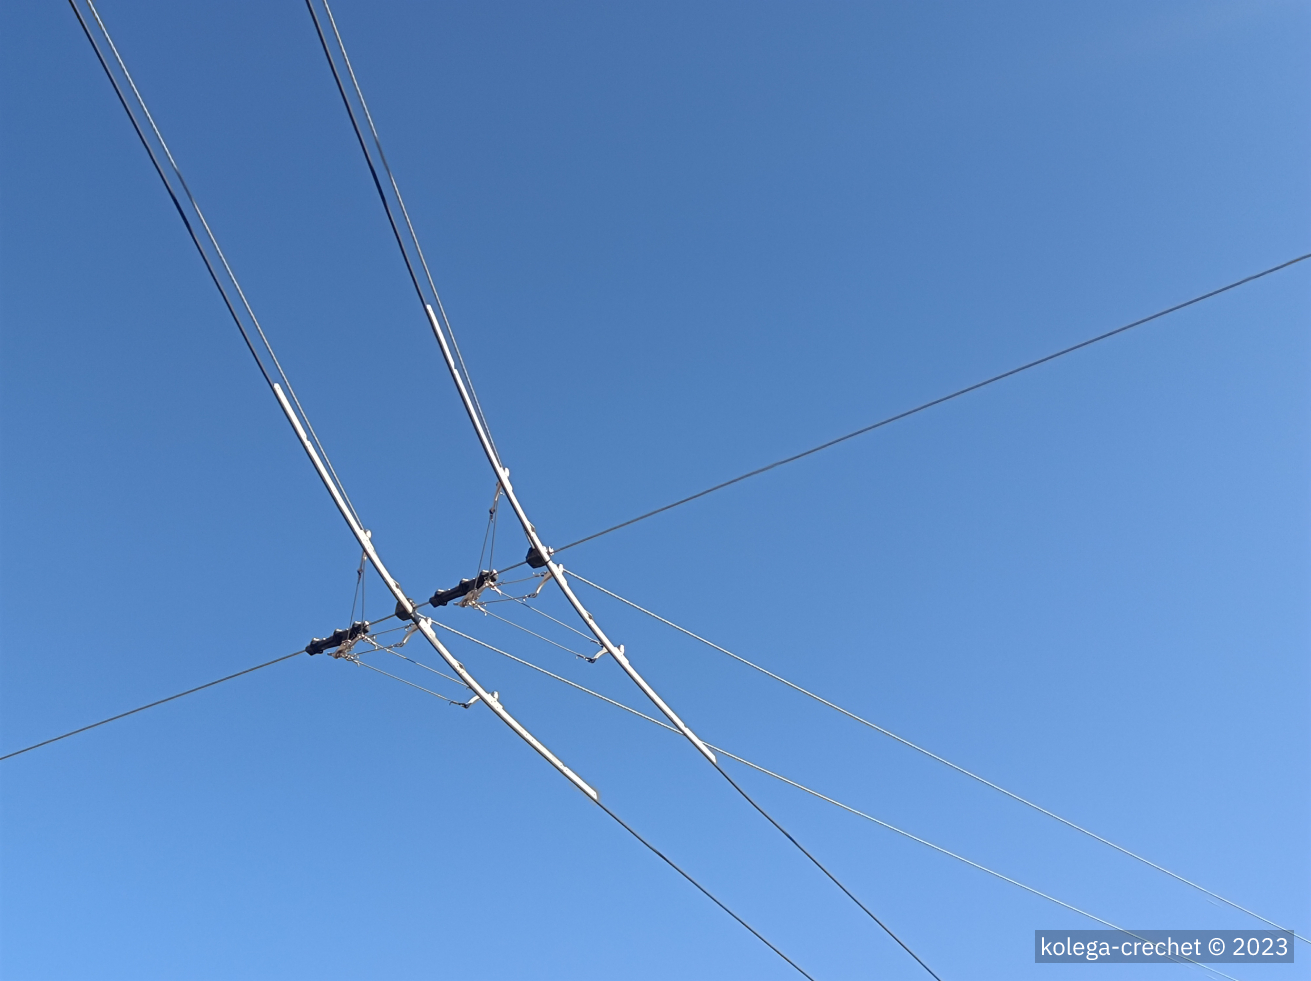 Контактная сеть, энергоснабжение и токосъём; Кастельон-де-ла-Плана — Троллейбусные линии и инфраструктура